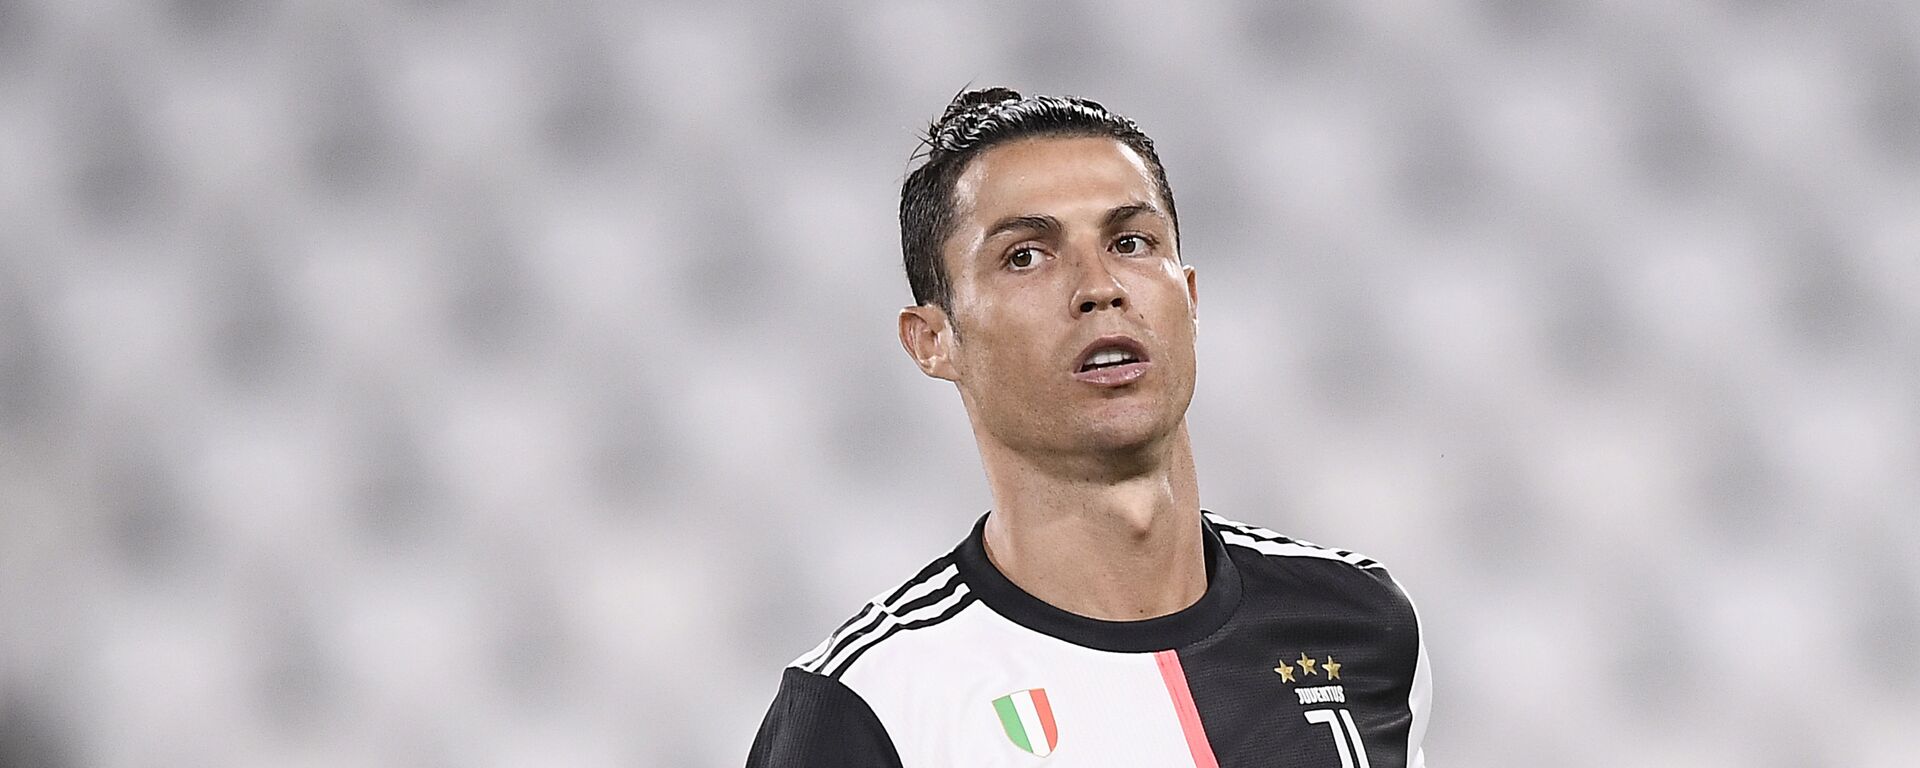 El futbolista portugués Cristiano Ronaldo jugando para la Juventus de Italia - Sputnik Mundo, 1920, 14.07.2020